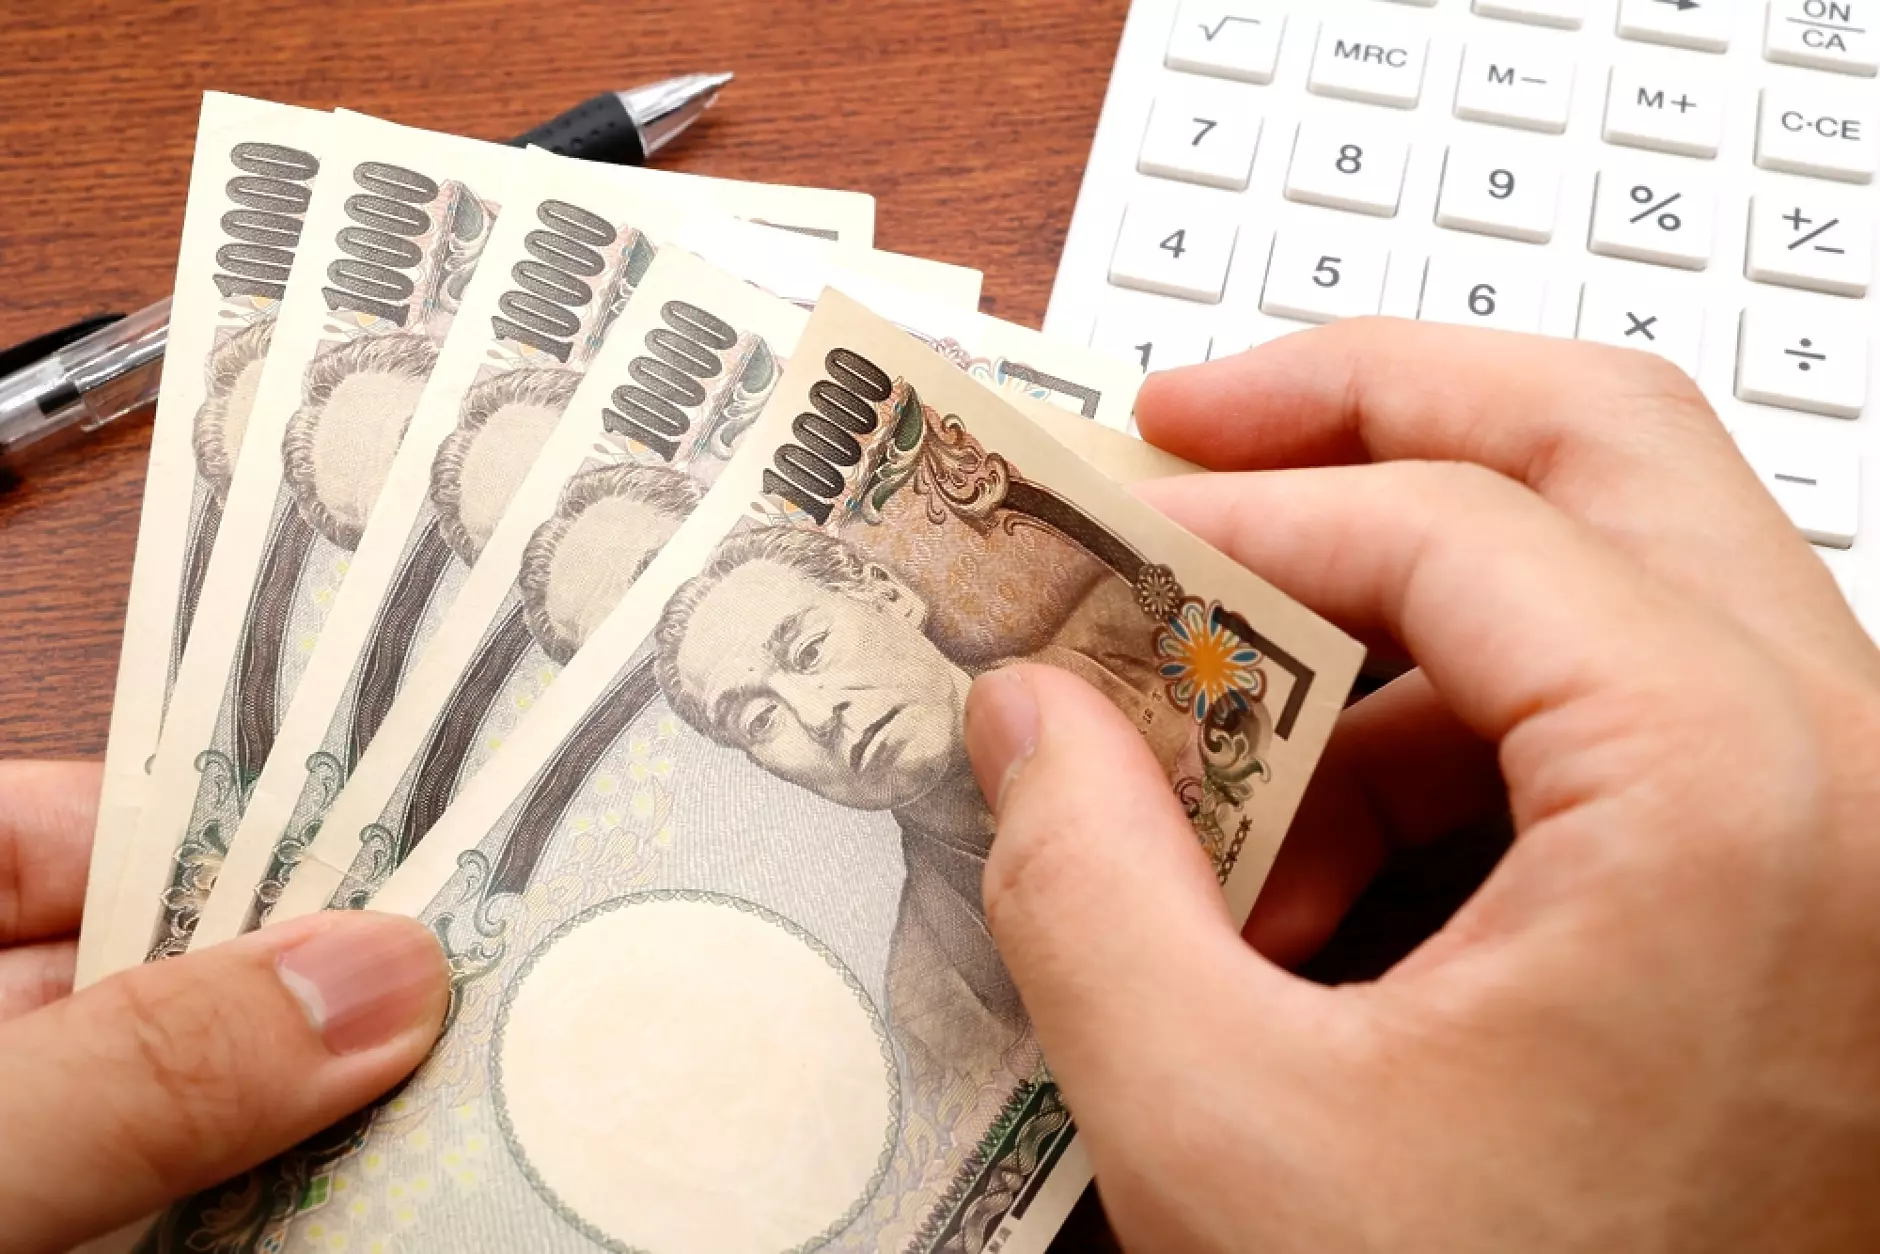 Япония тества нови банкноти с вградени триизмерни холограми